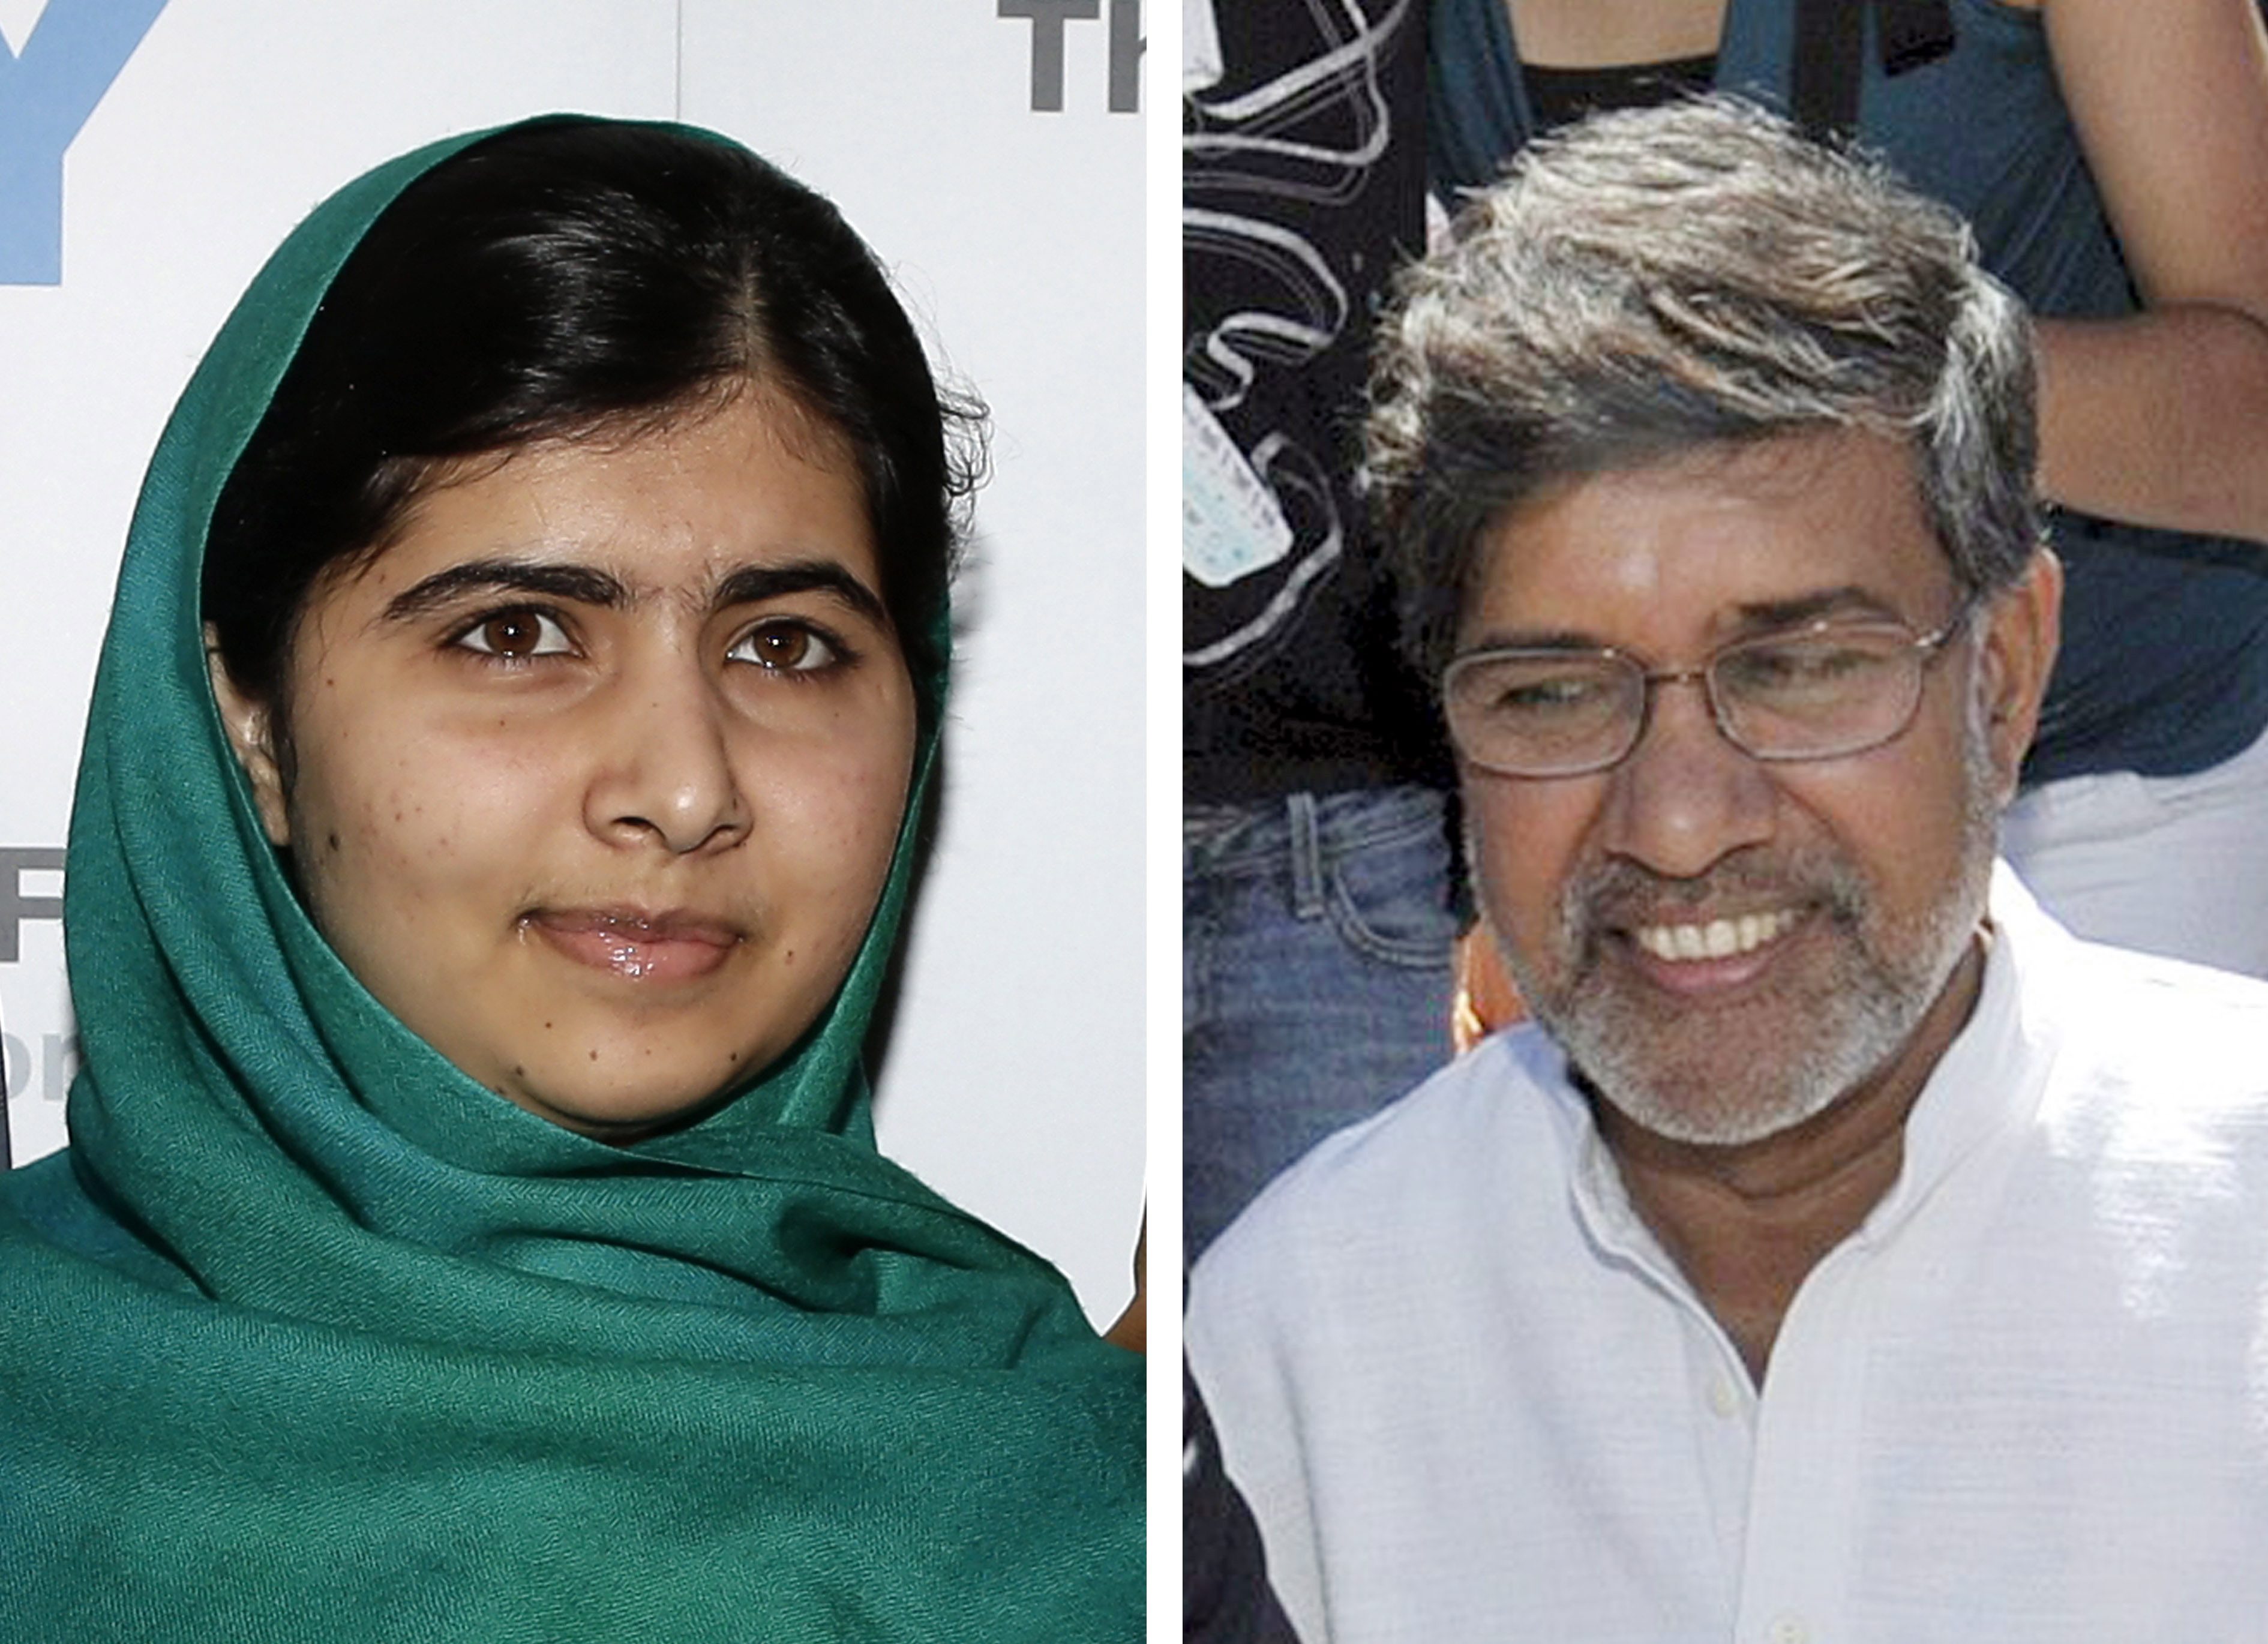 Στη Μαλάλα Γιουσαφζάι και τον ινδό Καϊλάς Σατιάρτ το Νόμπελ Ειρήνης για το 2014